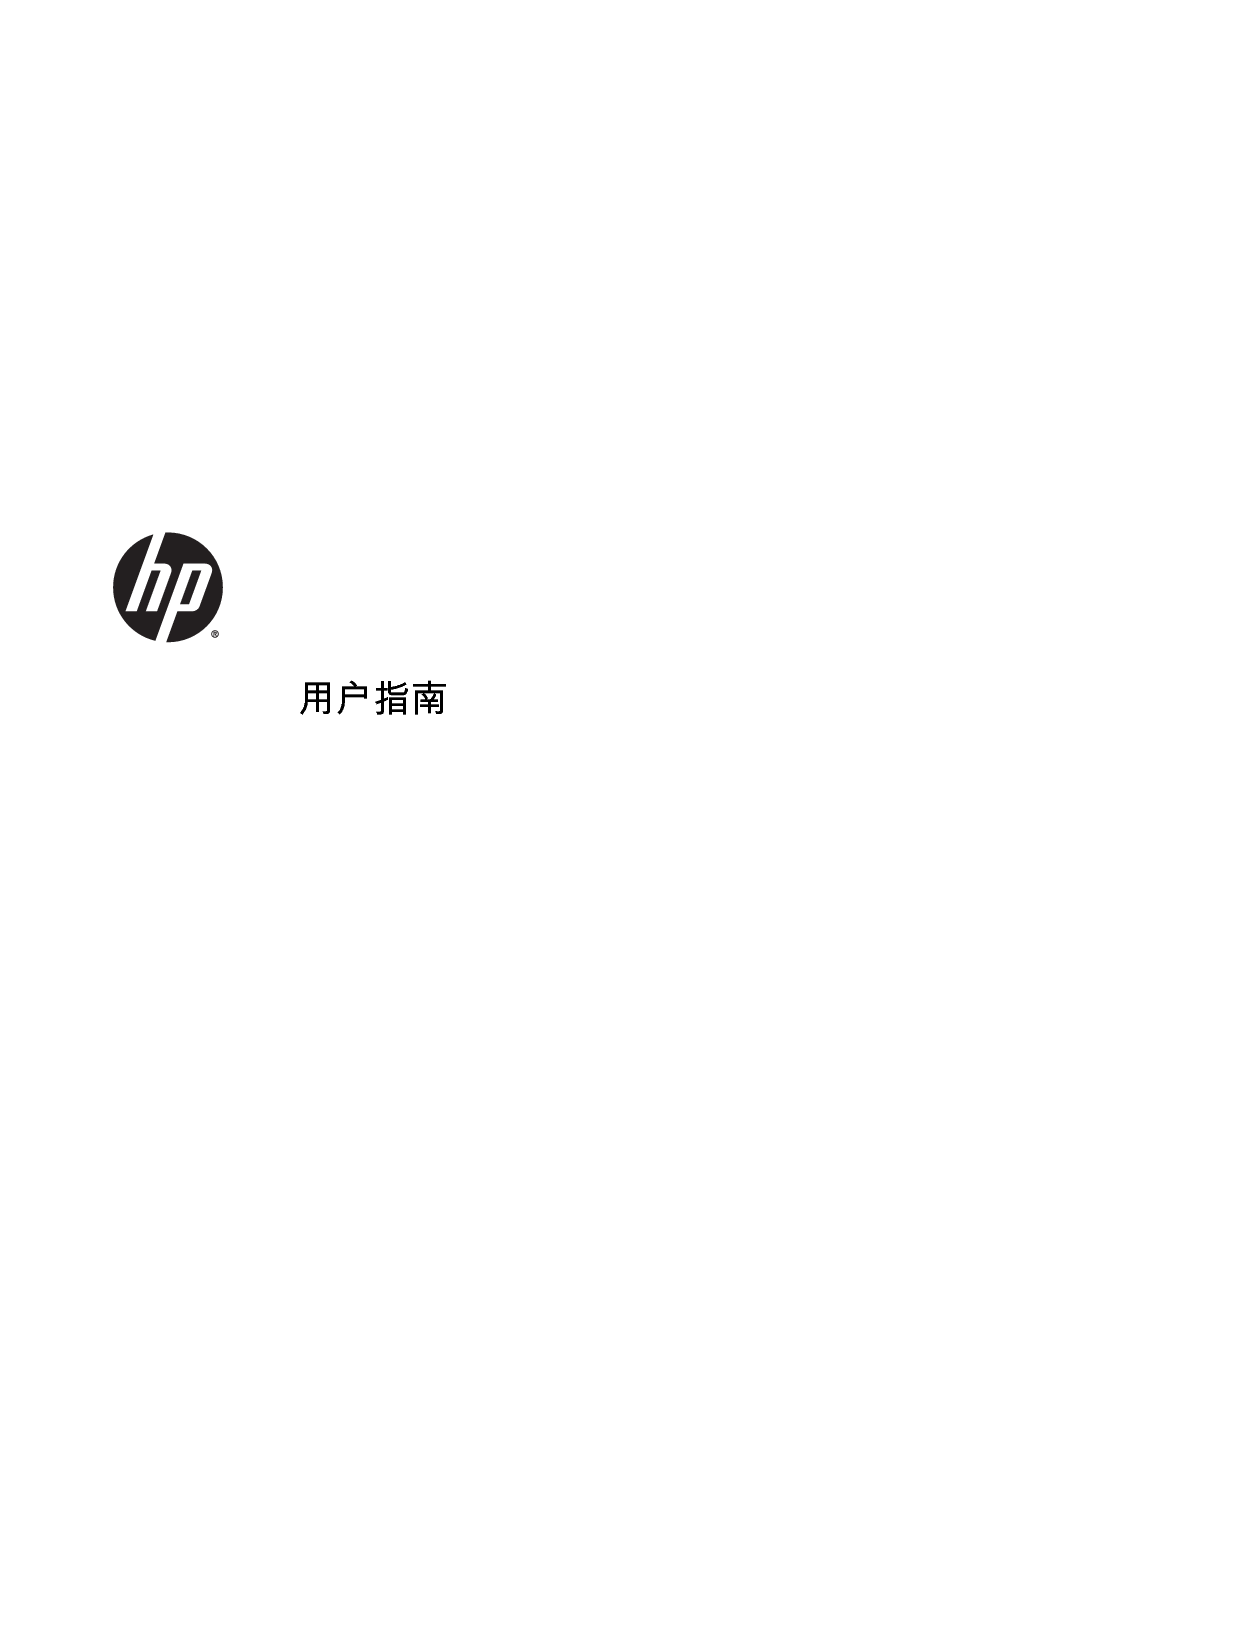 惠普 HP EliteBook Folio 1040 G1 Windows 7 用户指南 封面